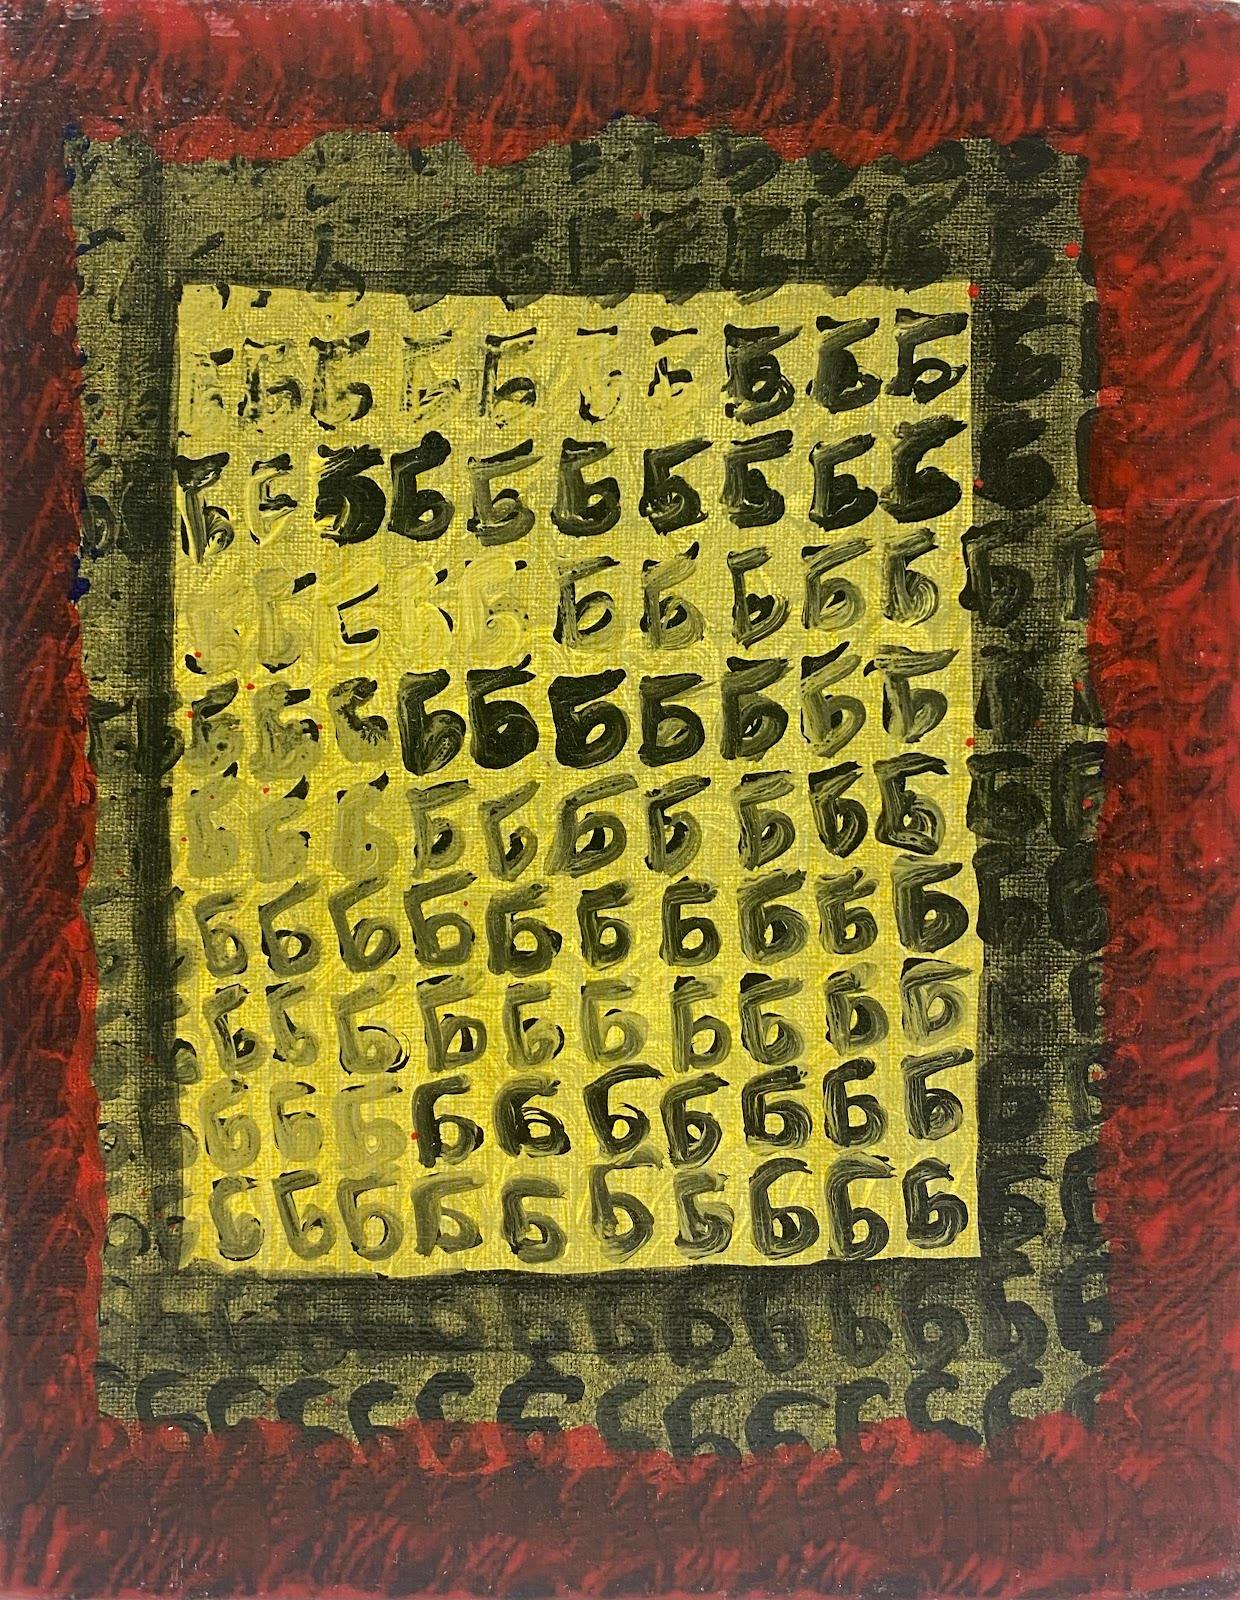 Abstract Painting Jacques Coulais (1955-2011) - Expressionniste français - Peinture abstraite originale - Artiste - Provenance de l'atelier 